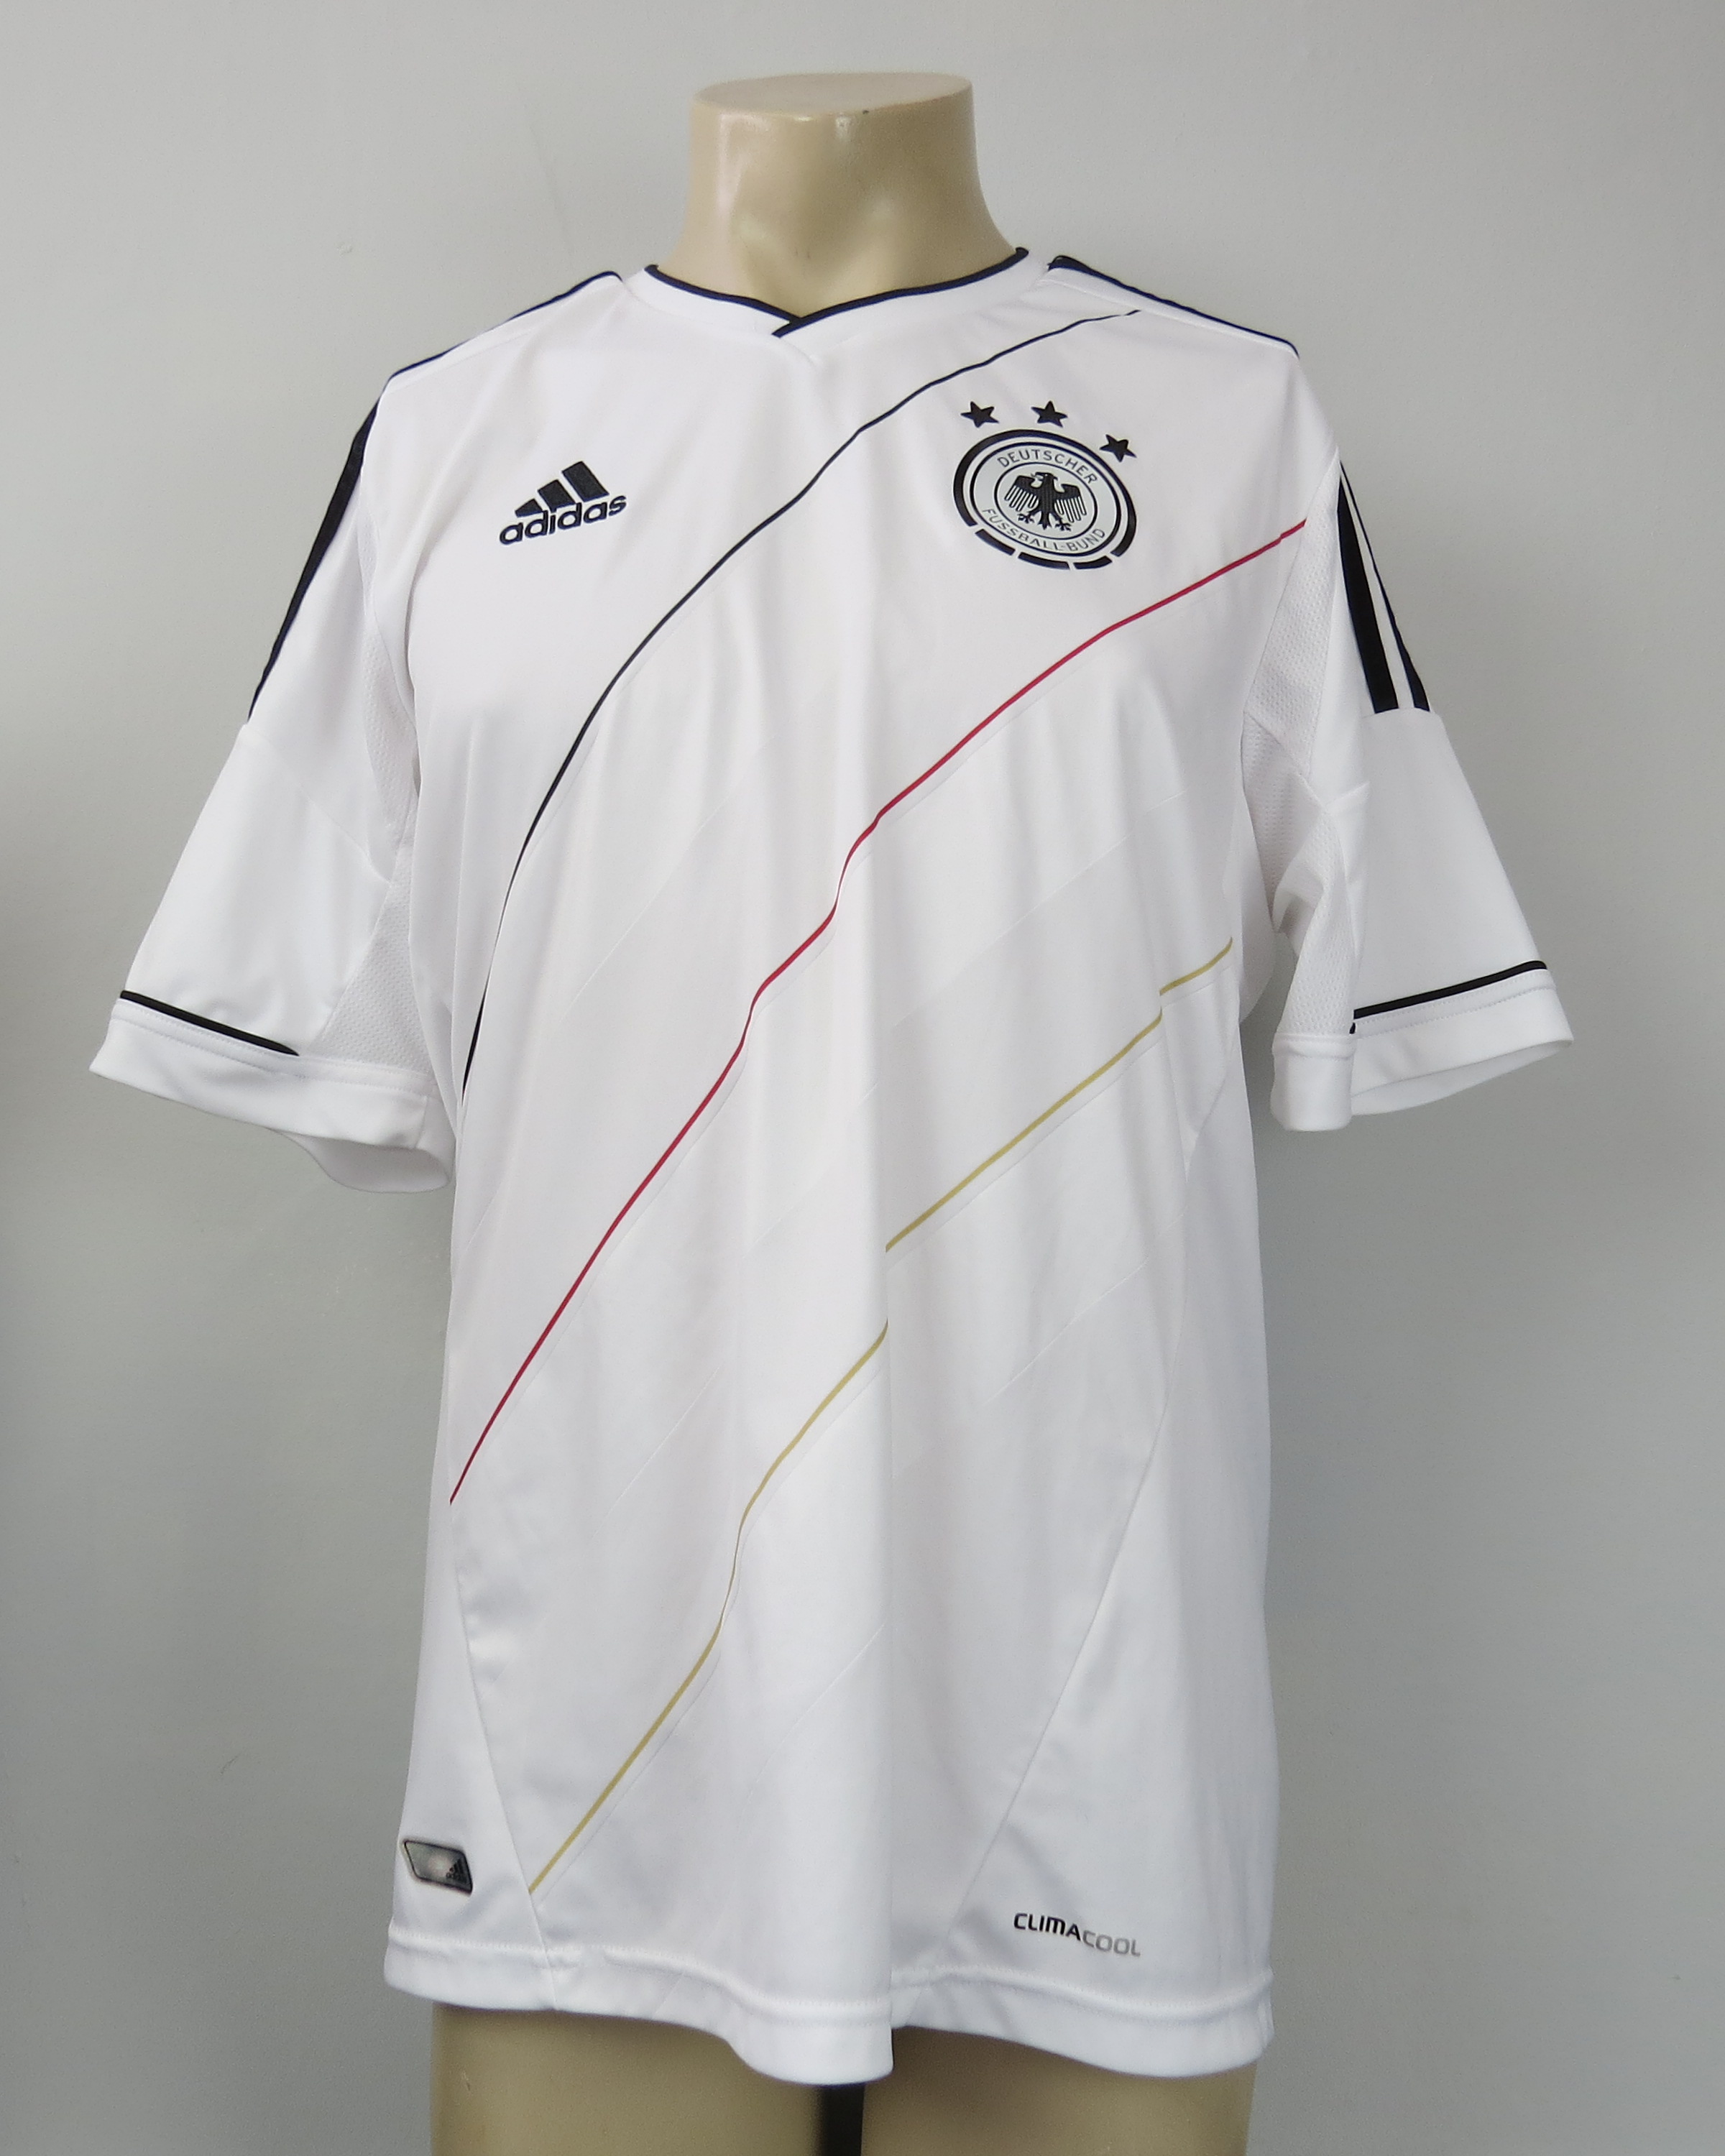 deutschland soccer jersey